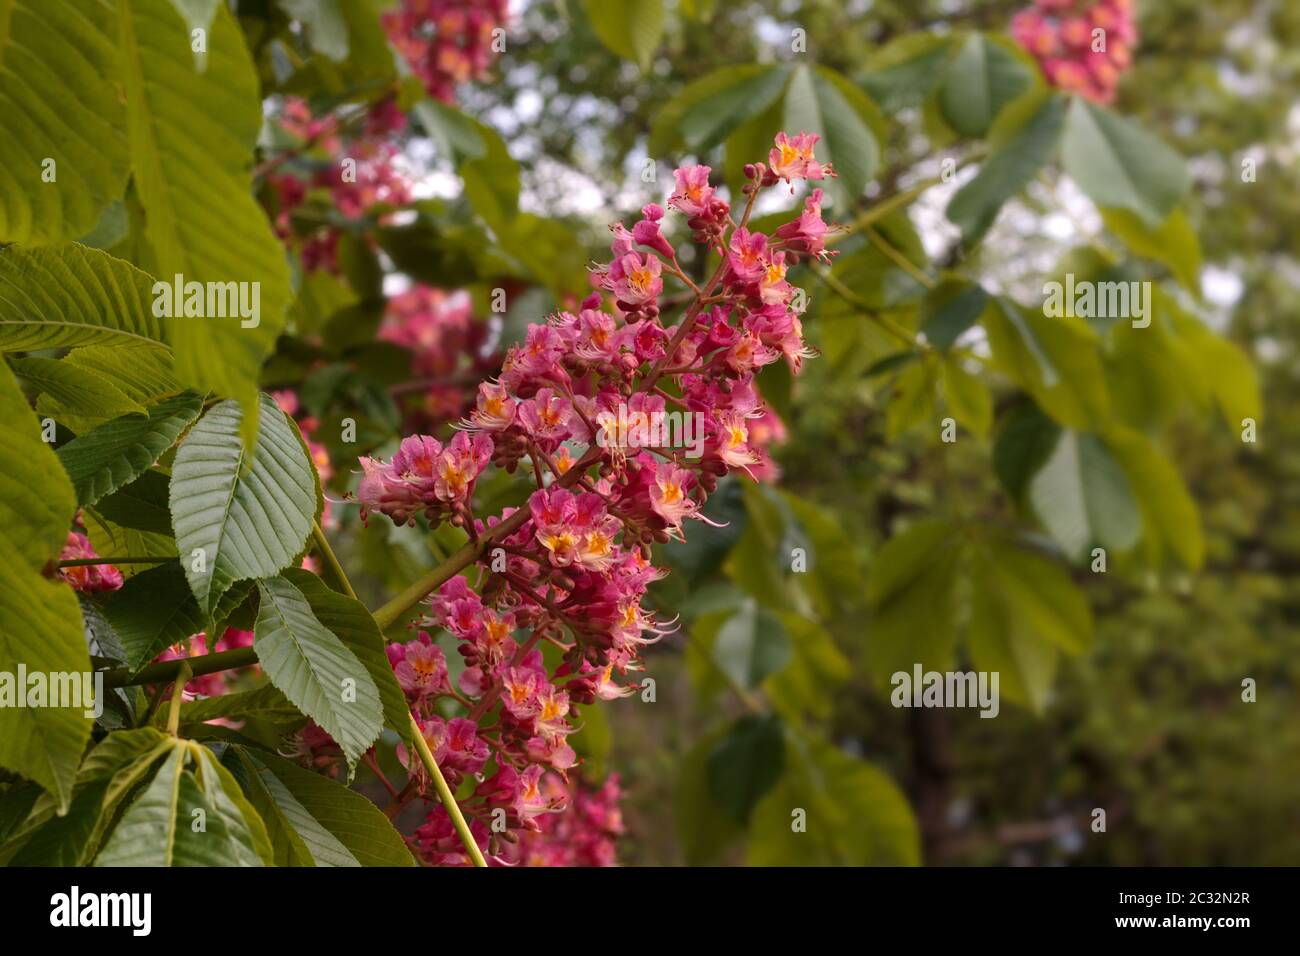 Fiori di arancio profondo della castagno di Cavallo o dell'albero di Conker in fiore Foto Stock